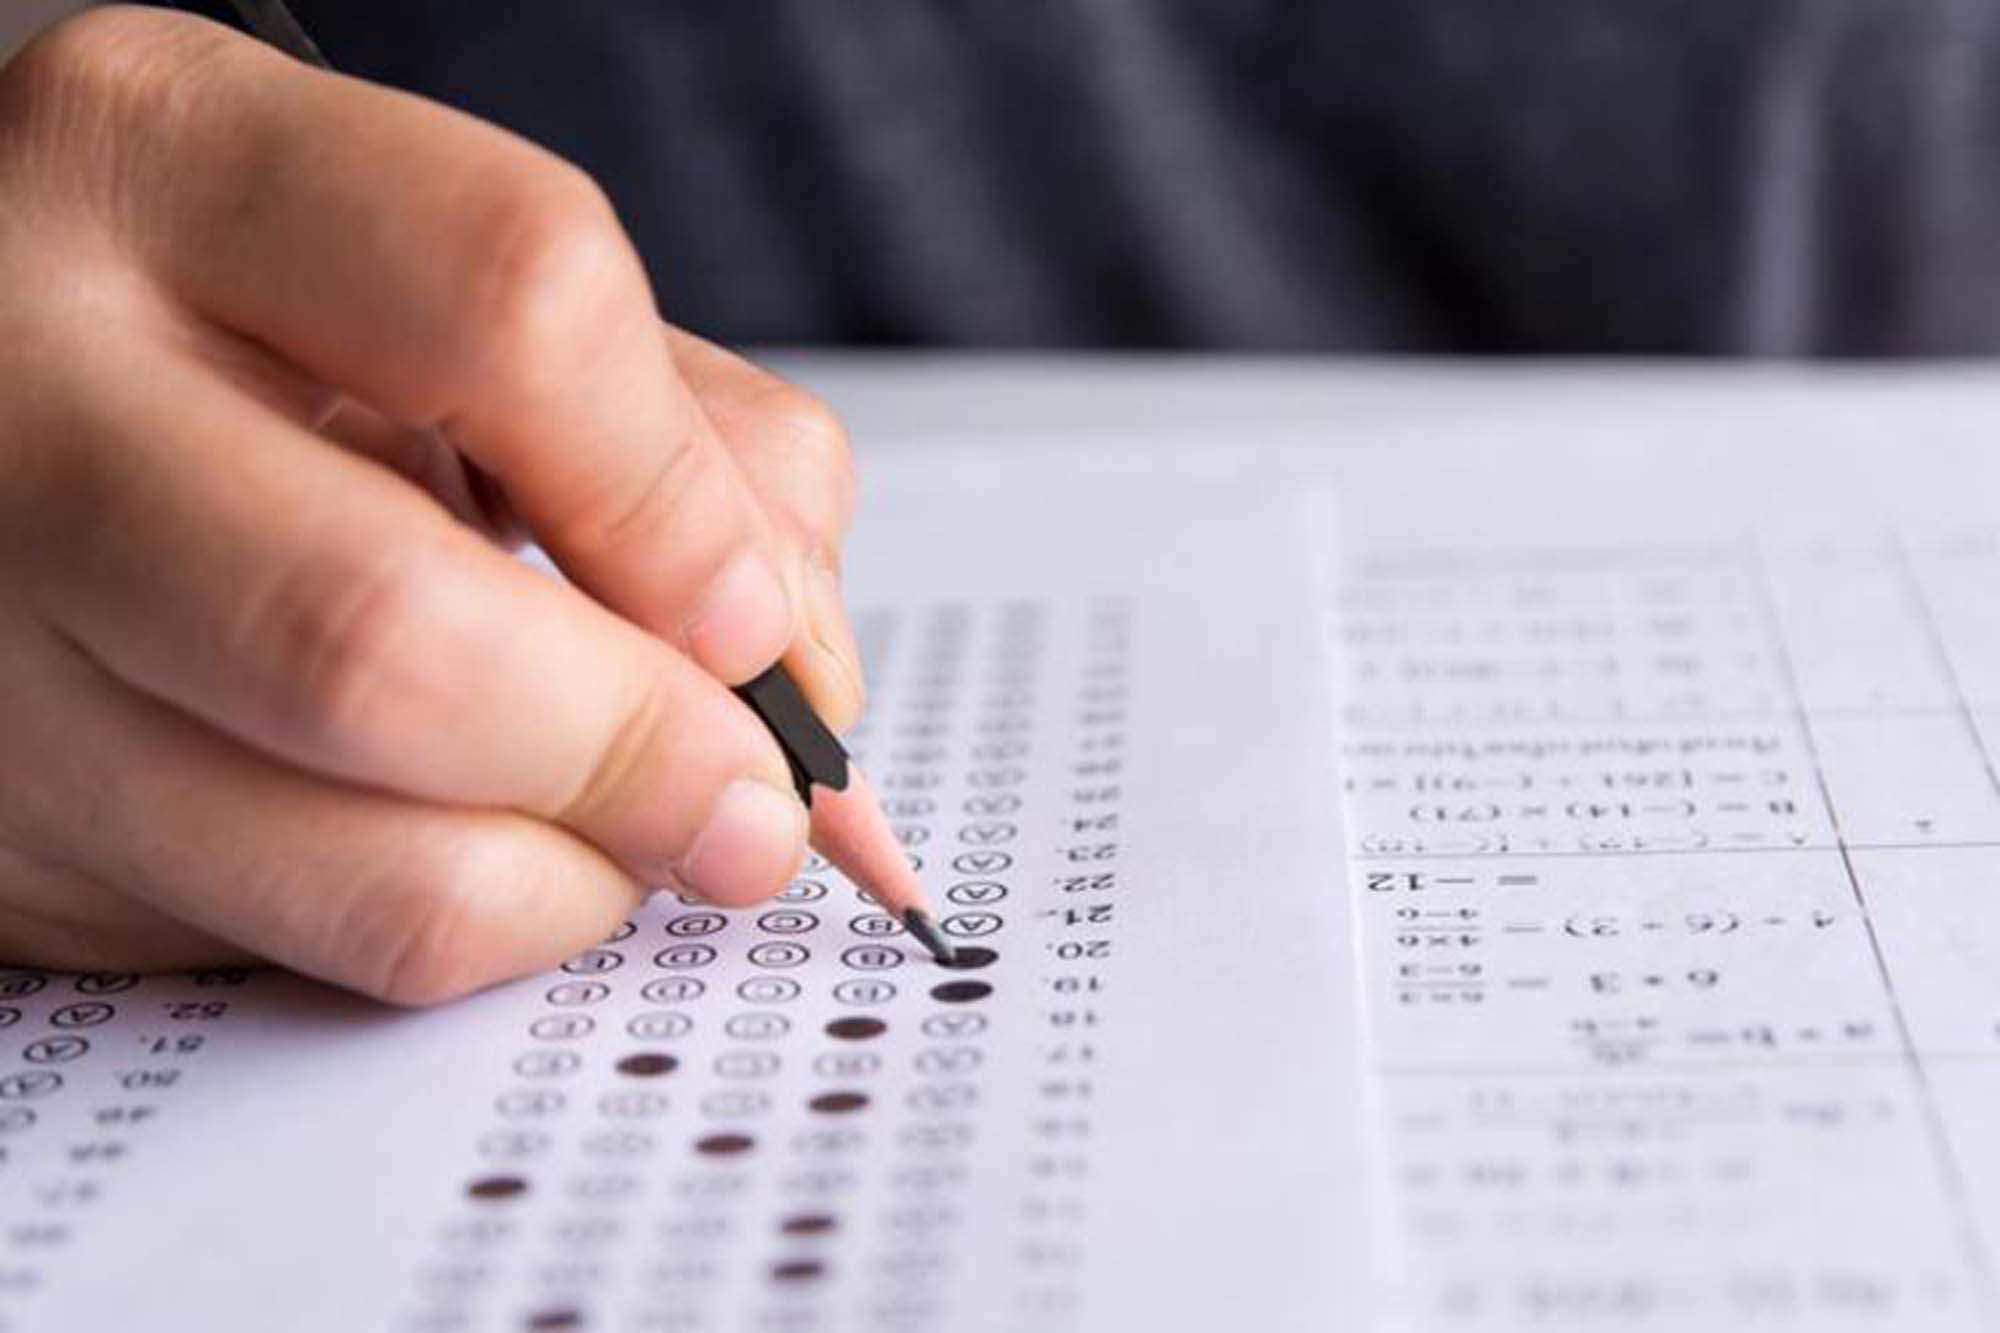 İOKBS Bursluluk sınavı sonuçları açıklandı mı? | MEB 2021 İOKBS Bursluluk sınavı sonuçları sorgulama ekranı